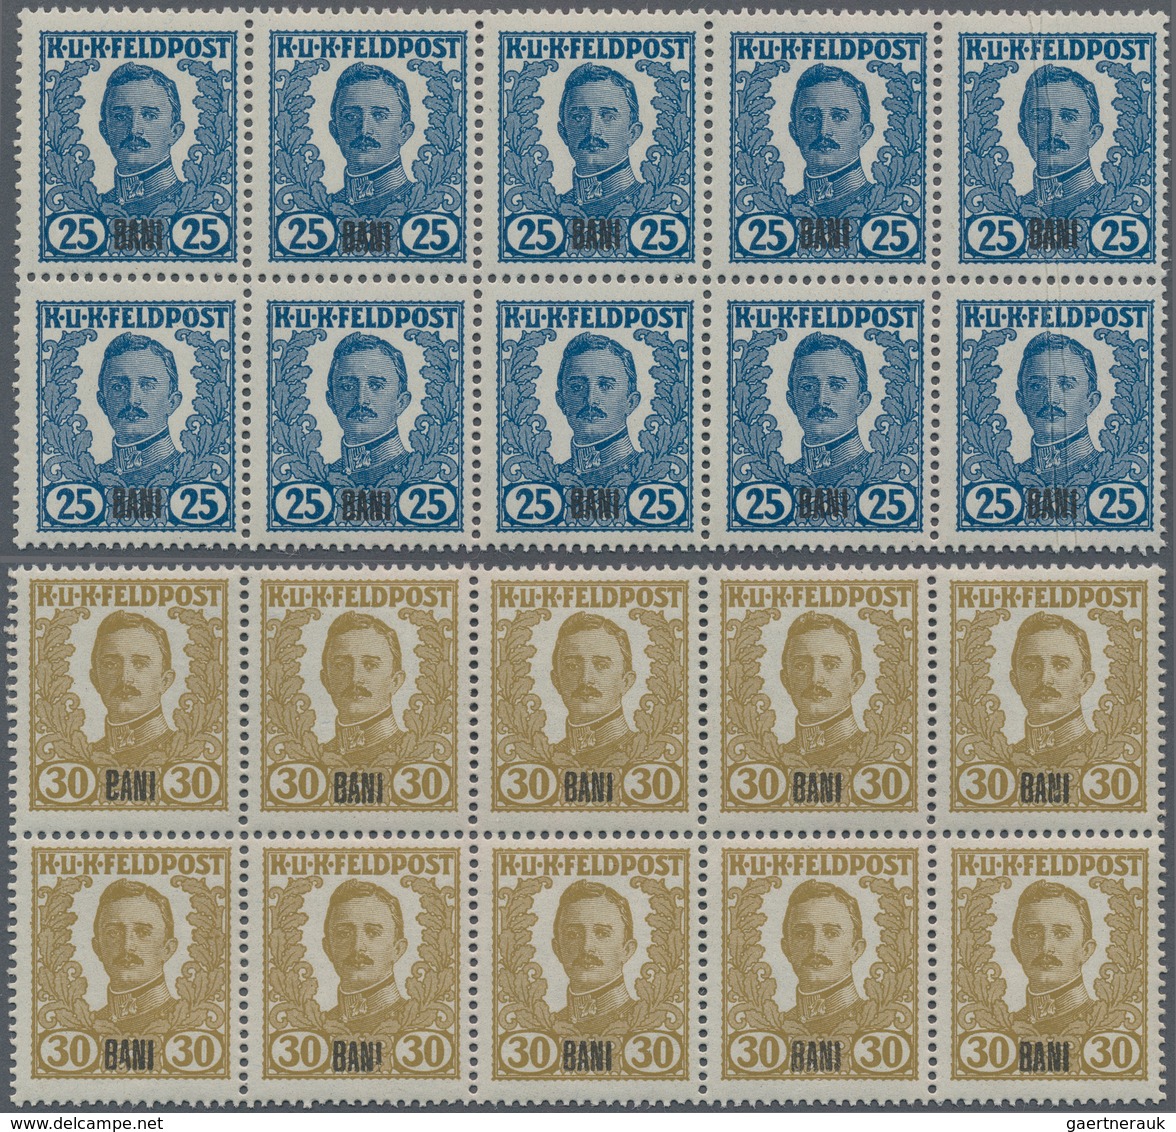 Österreichisch-Ungarische Feldpost - Rumänien: 1918 Unverausgabte Serie 'Kaiser Karl I.' mit Aufdruc